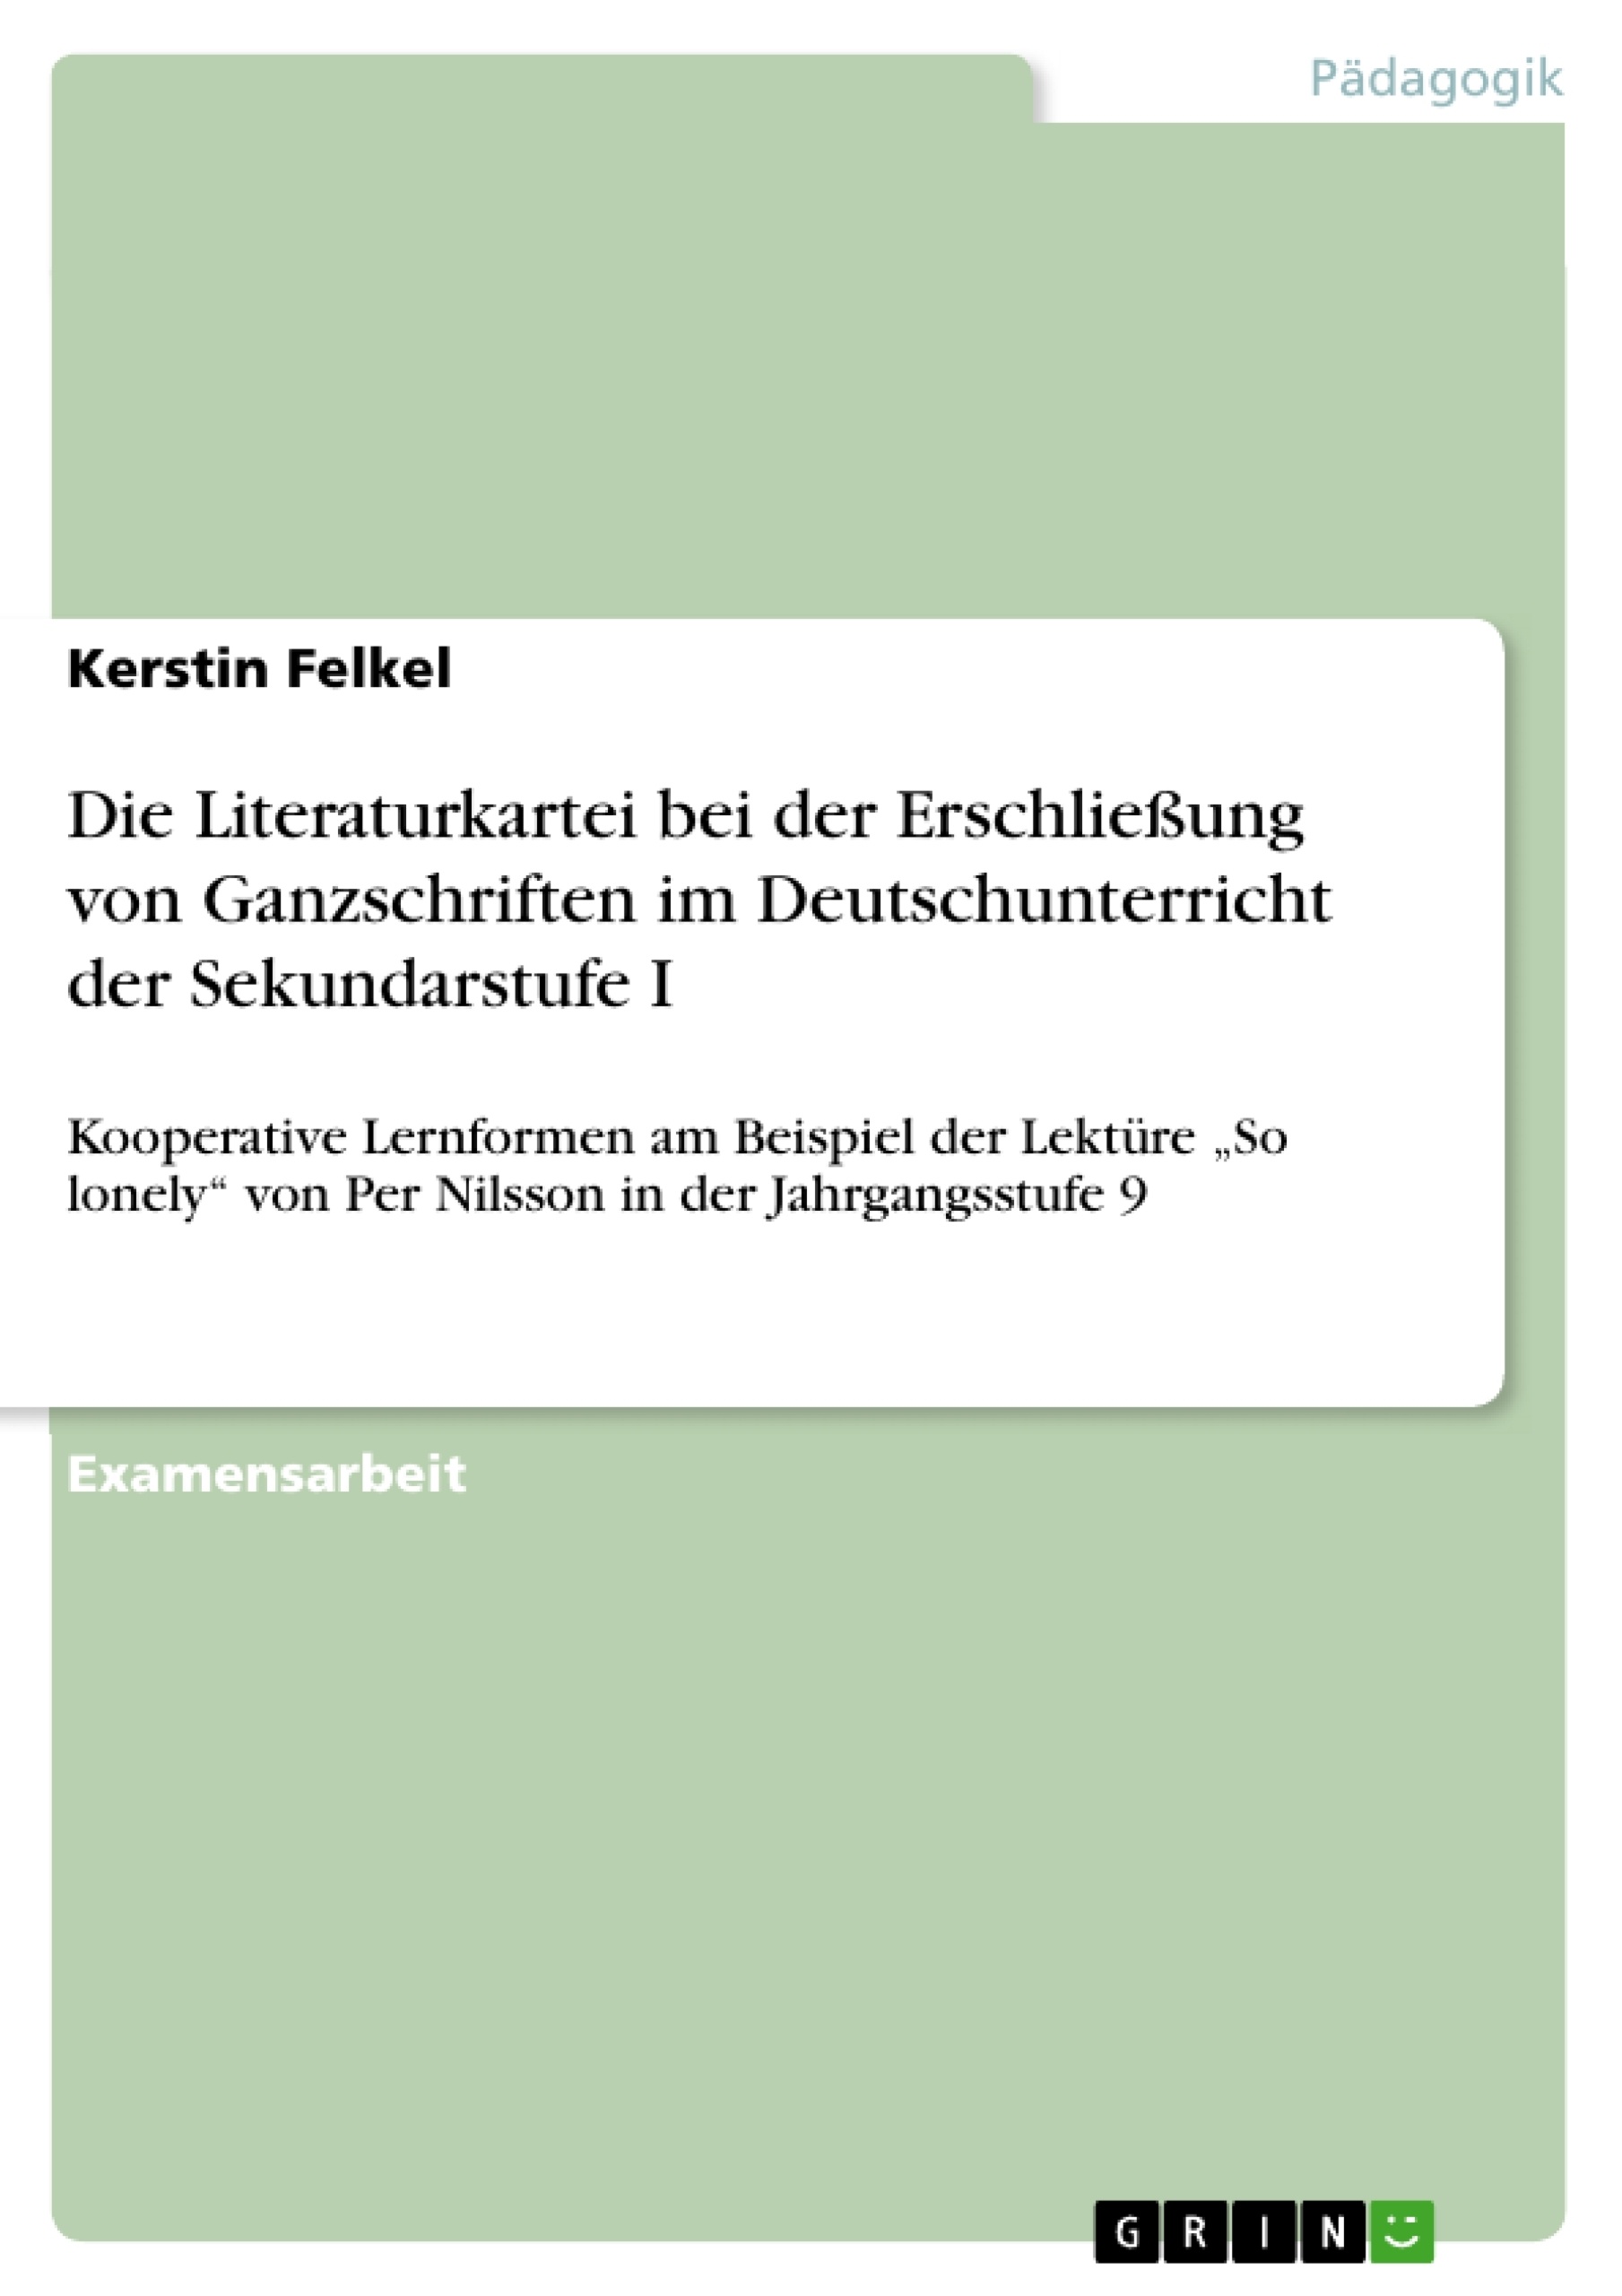 Title: Die Literaturkartei bei der Erschließung von Ganzschriften im Deutschunterricht der Sekundarstufe I